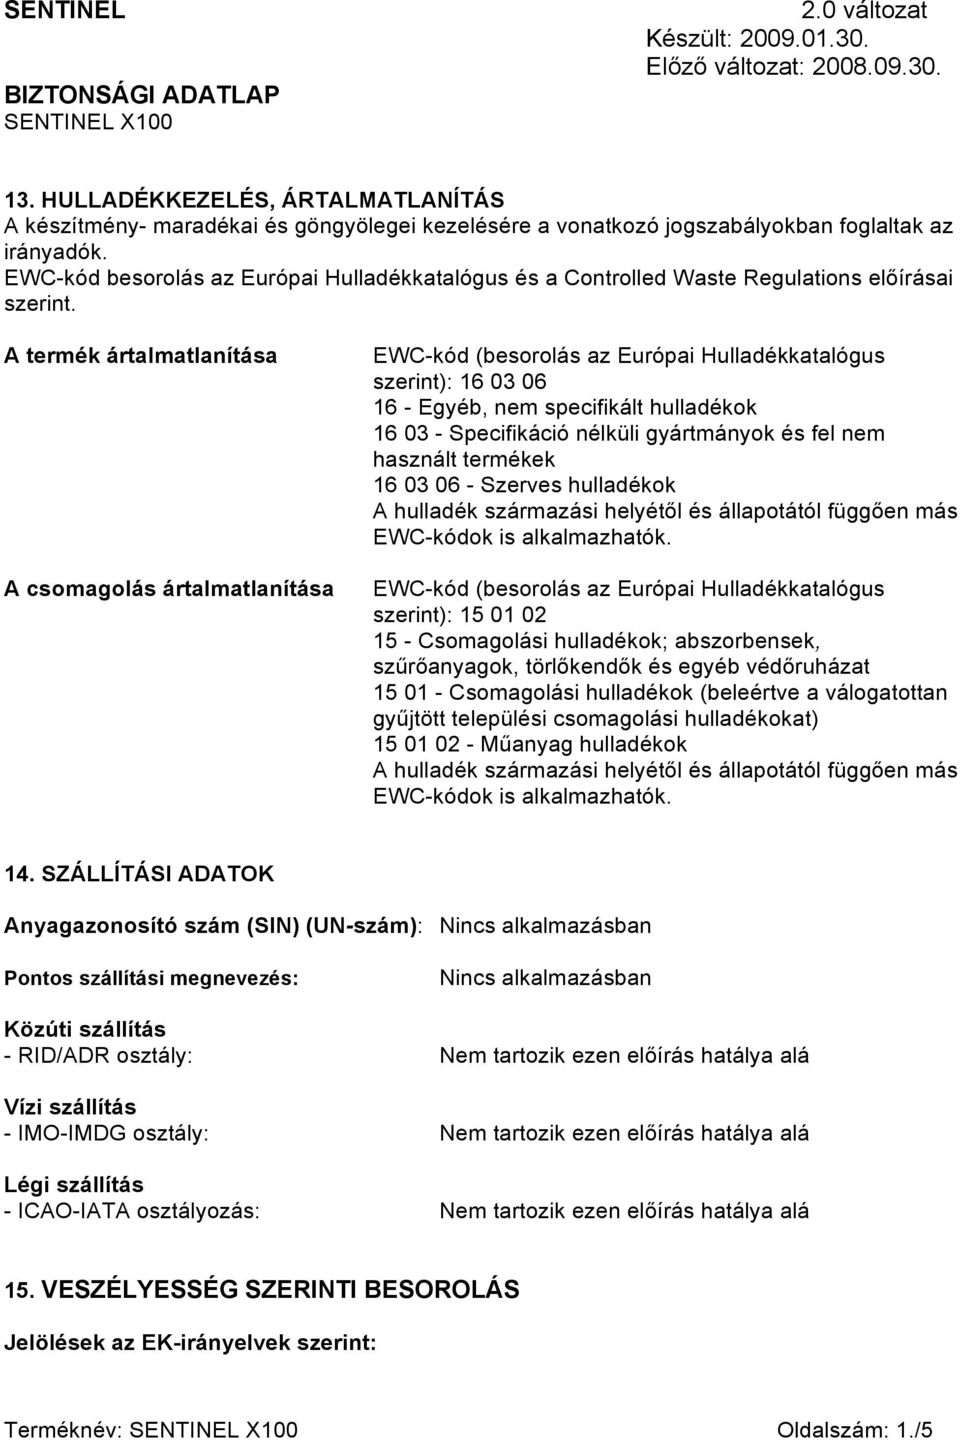 A termék ártalmatlanítása A csomagolás ártalmatlanítása EWC-kód (besorolás az Európai Hulladékkatalógus szerint): 16 03 06 16 - Egyéb, nem specifikált hulladékok 16 03 - Specifikáció nélküli